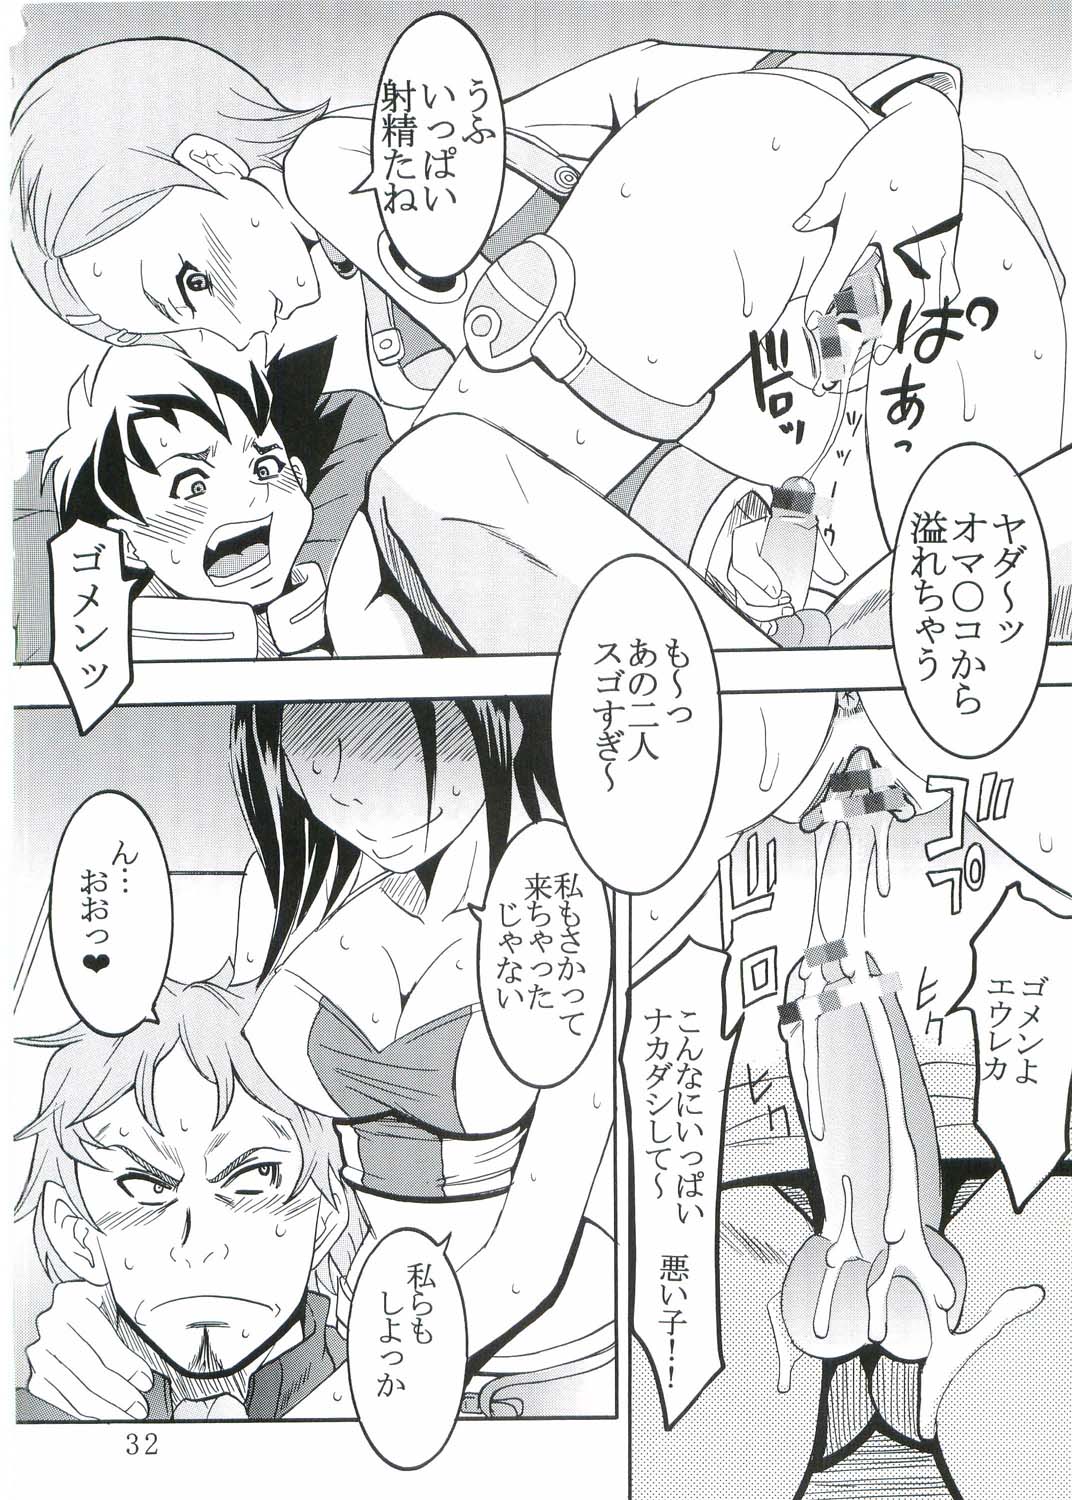 [St. Rio (Kitty, Kouenji Rei)] Ura ray-out (Eureka seveN) page 33 full